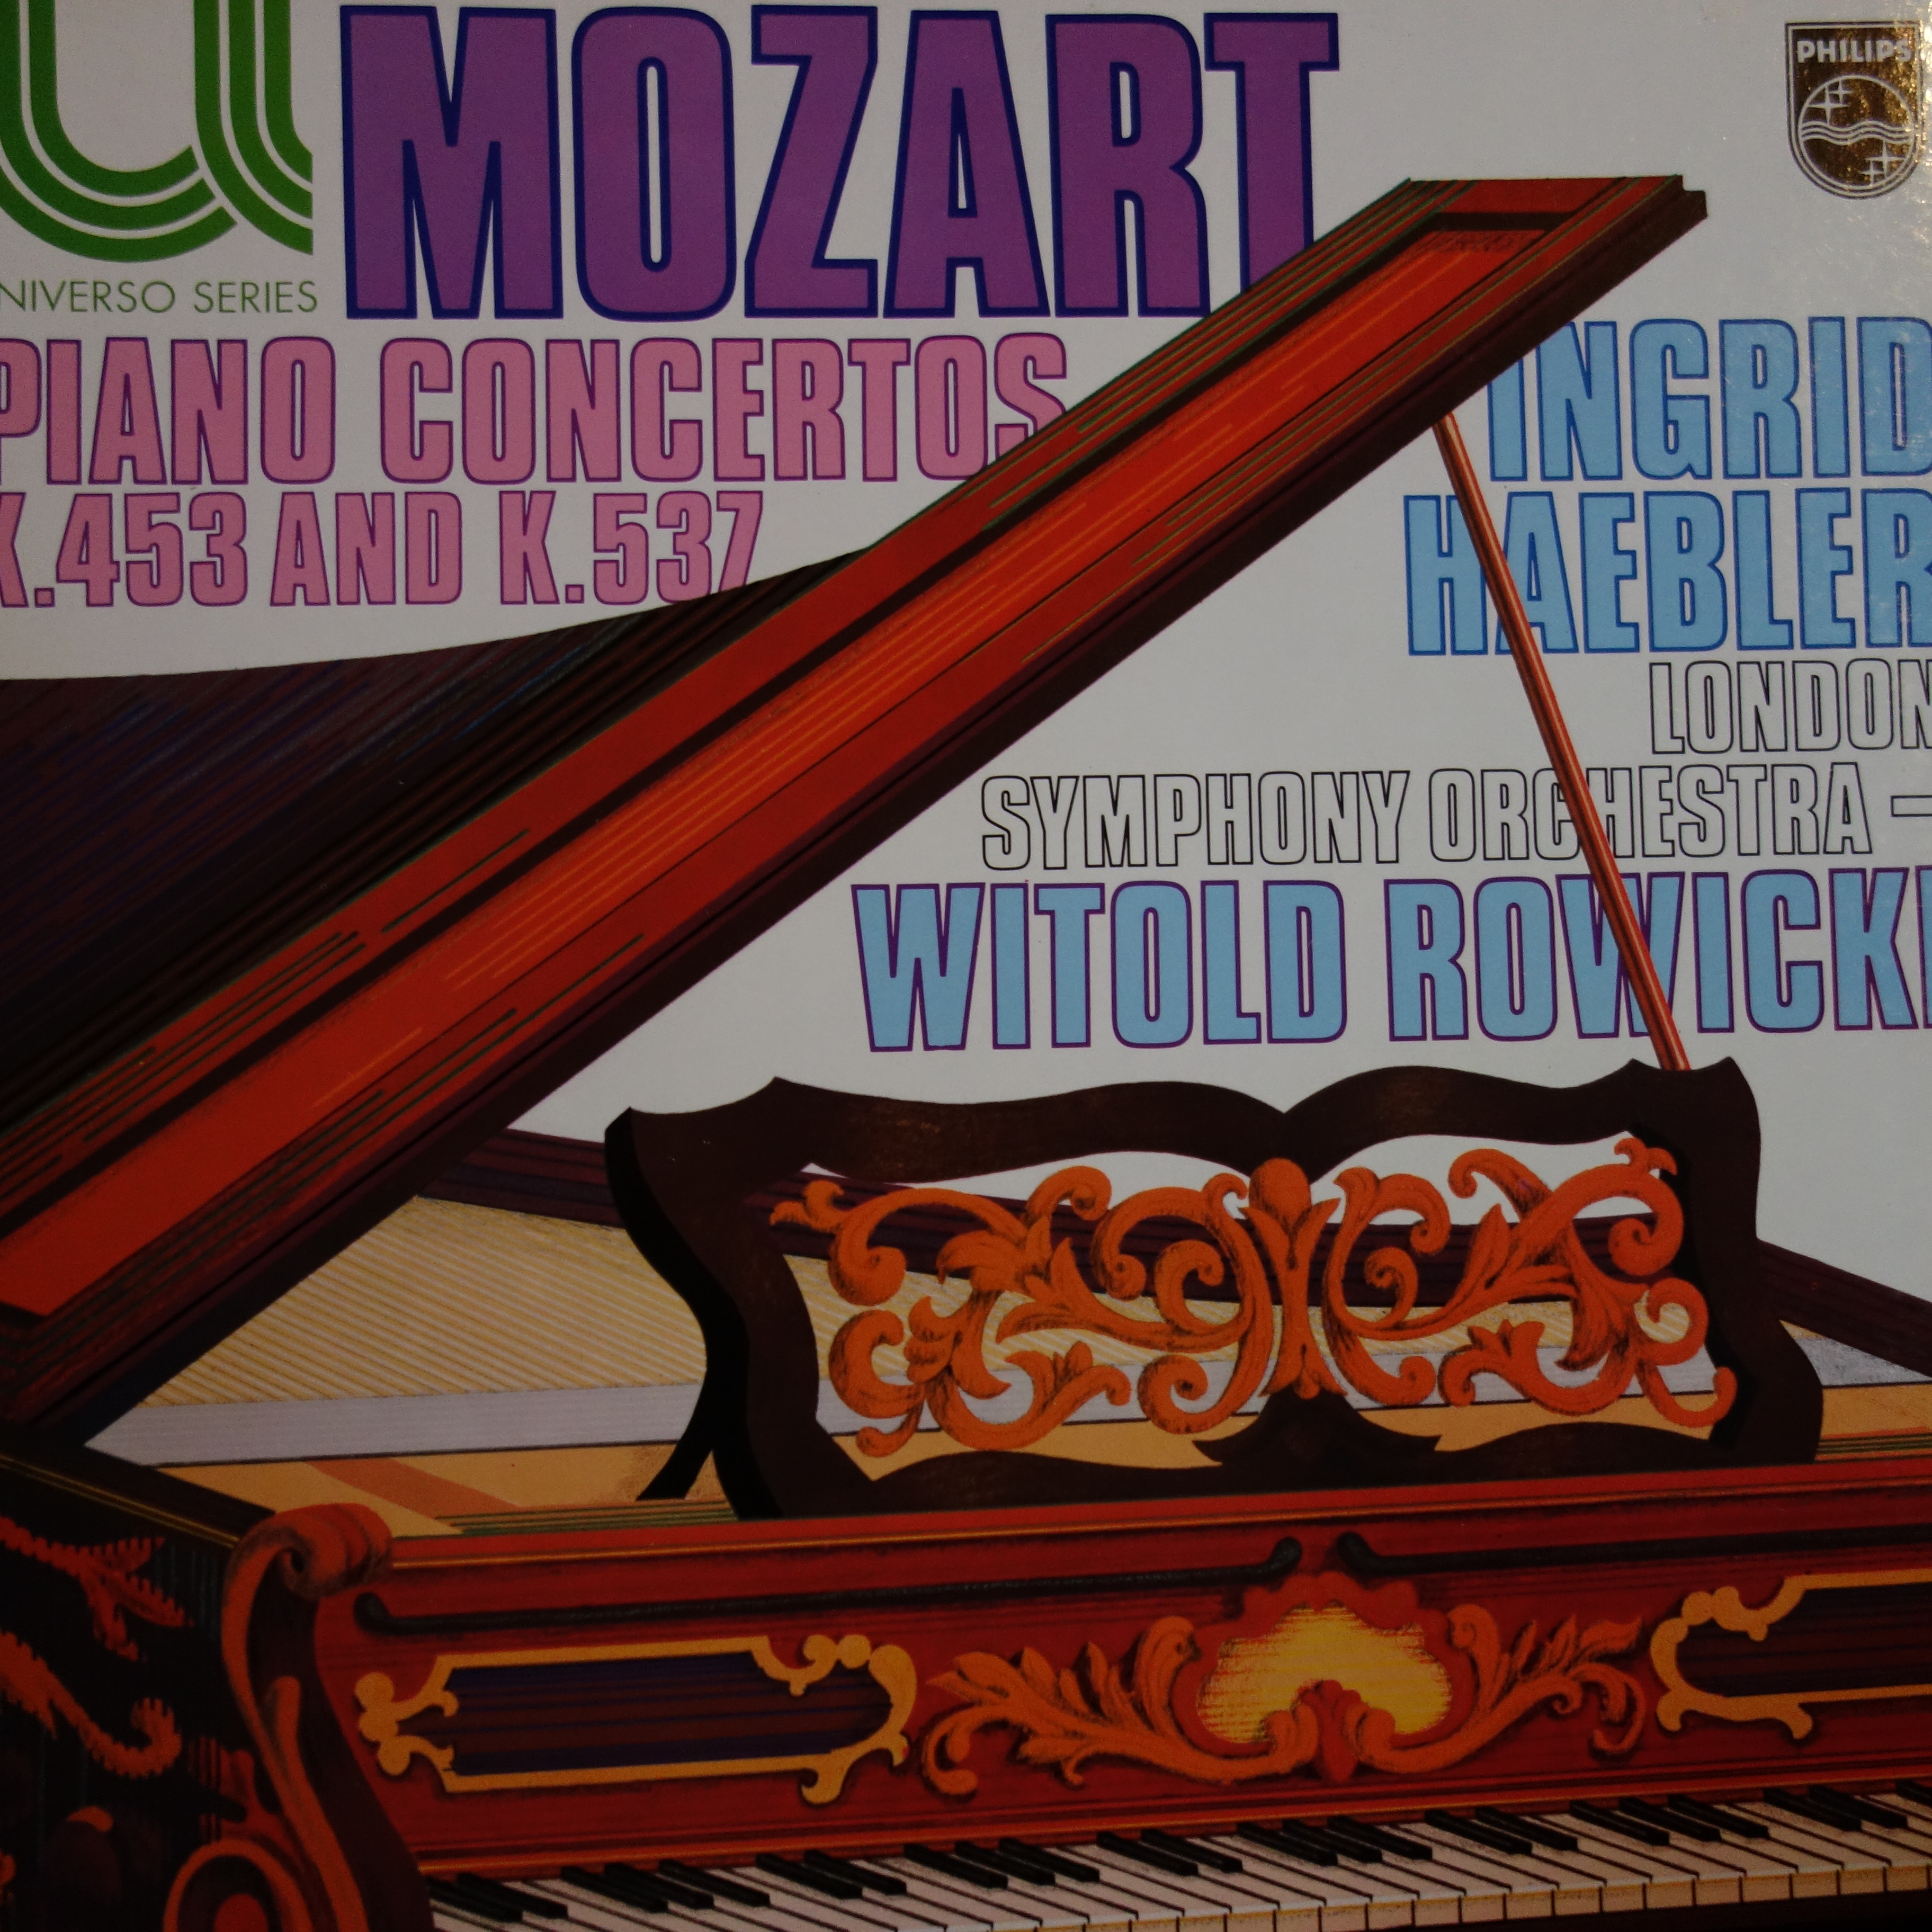 6580 043 Mozart Piano Concertos K.453 & K.537 / Ingrid Haebler